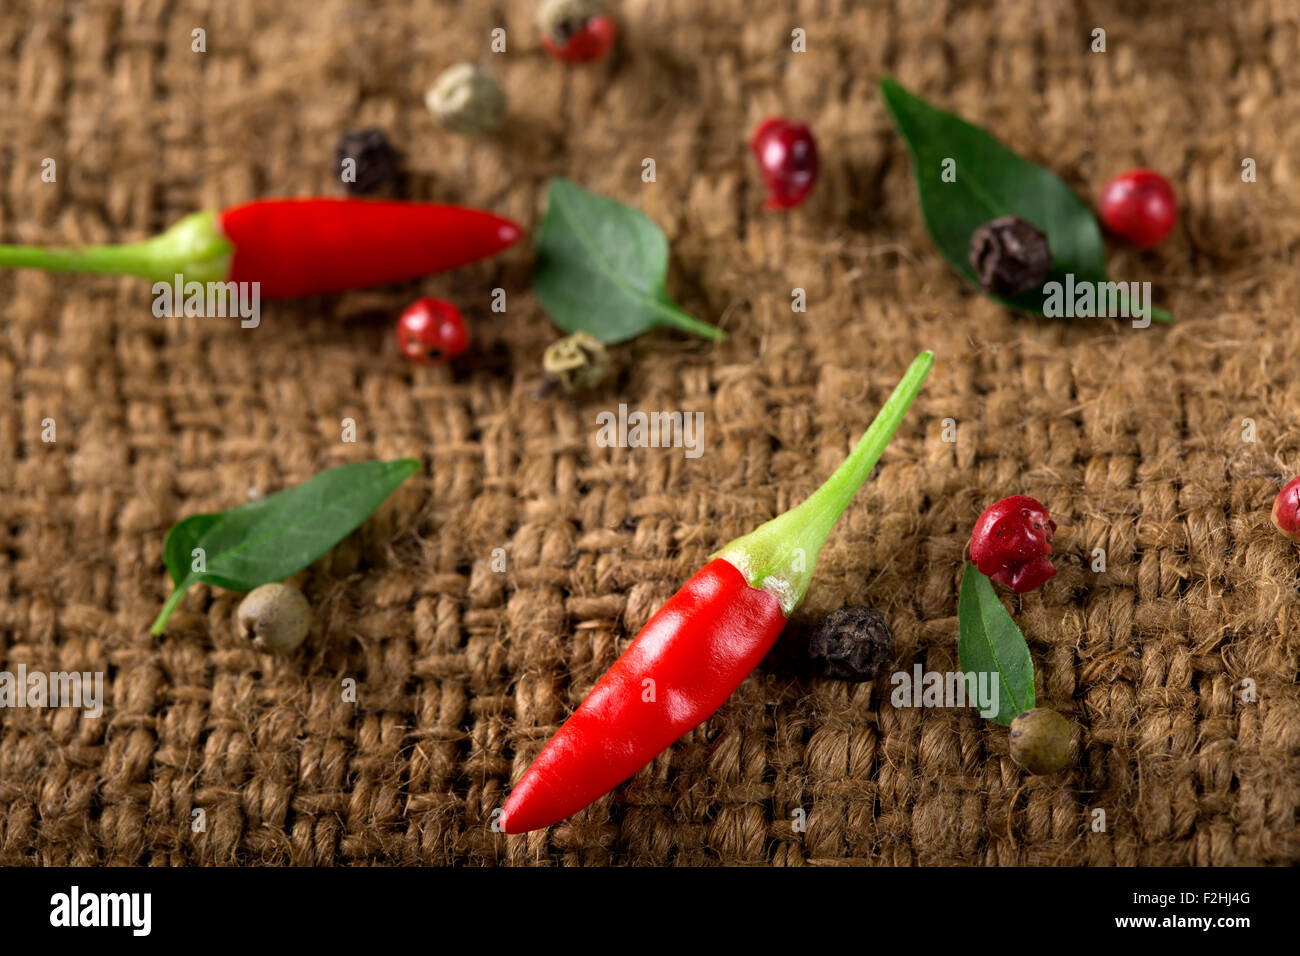 Alcuni piccoli freschi red hot chili peppers sul vecchio rustico sacchetto tessile Foto Stock